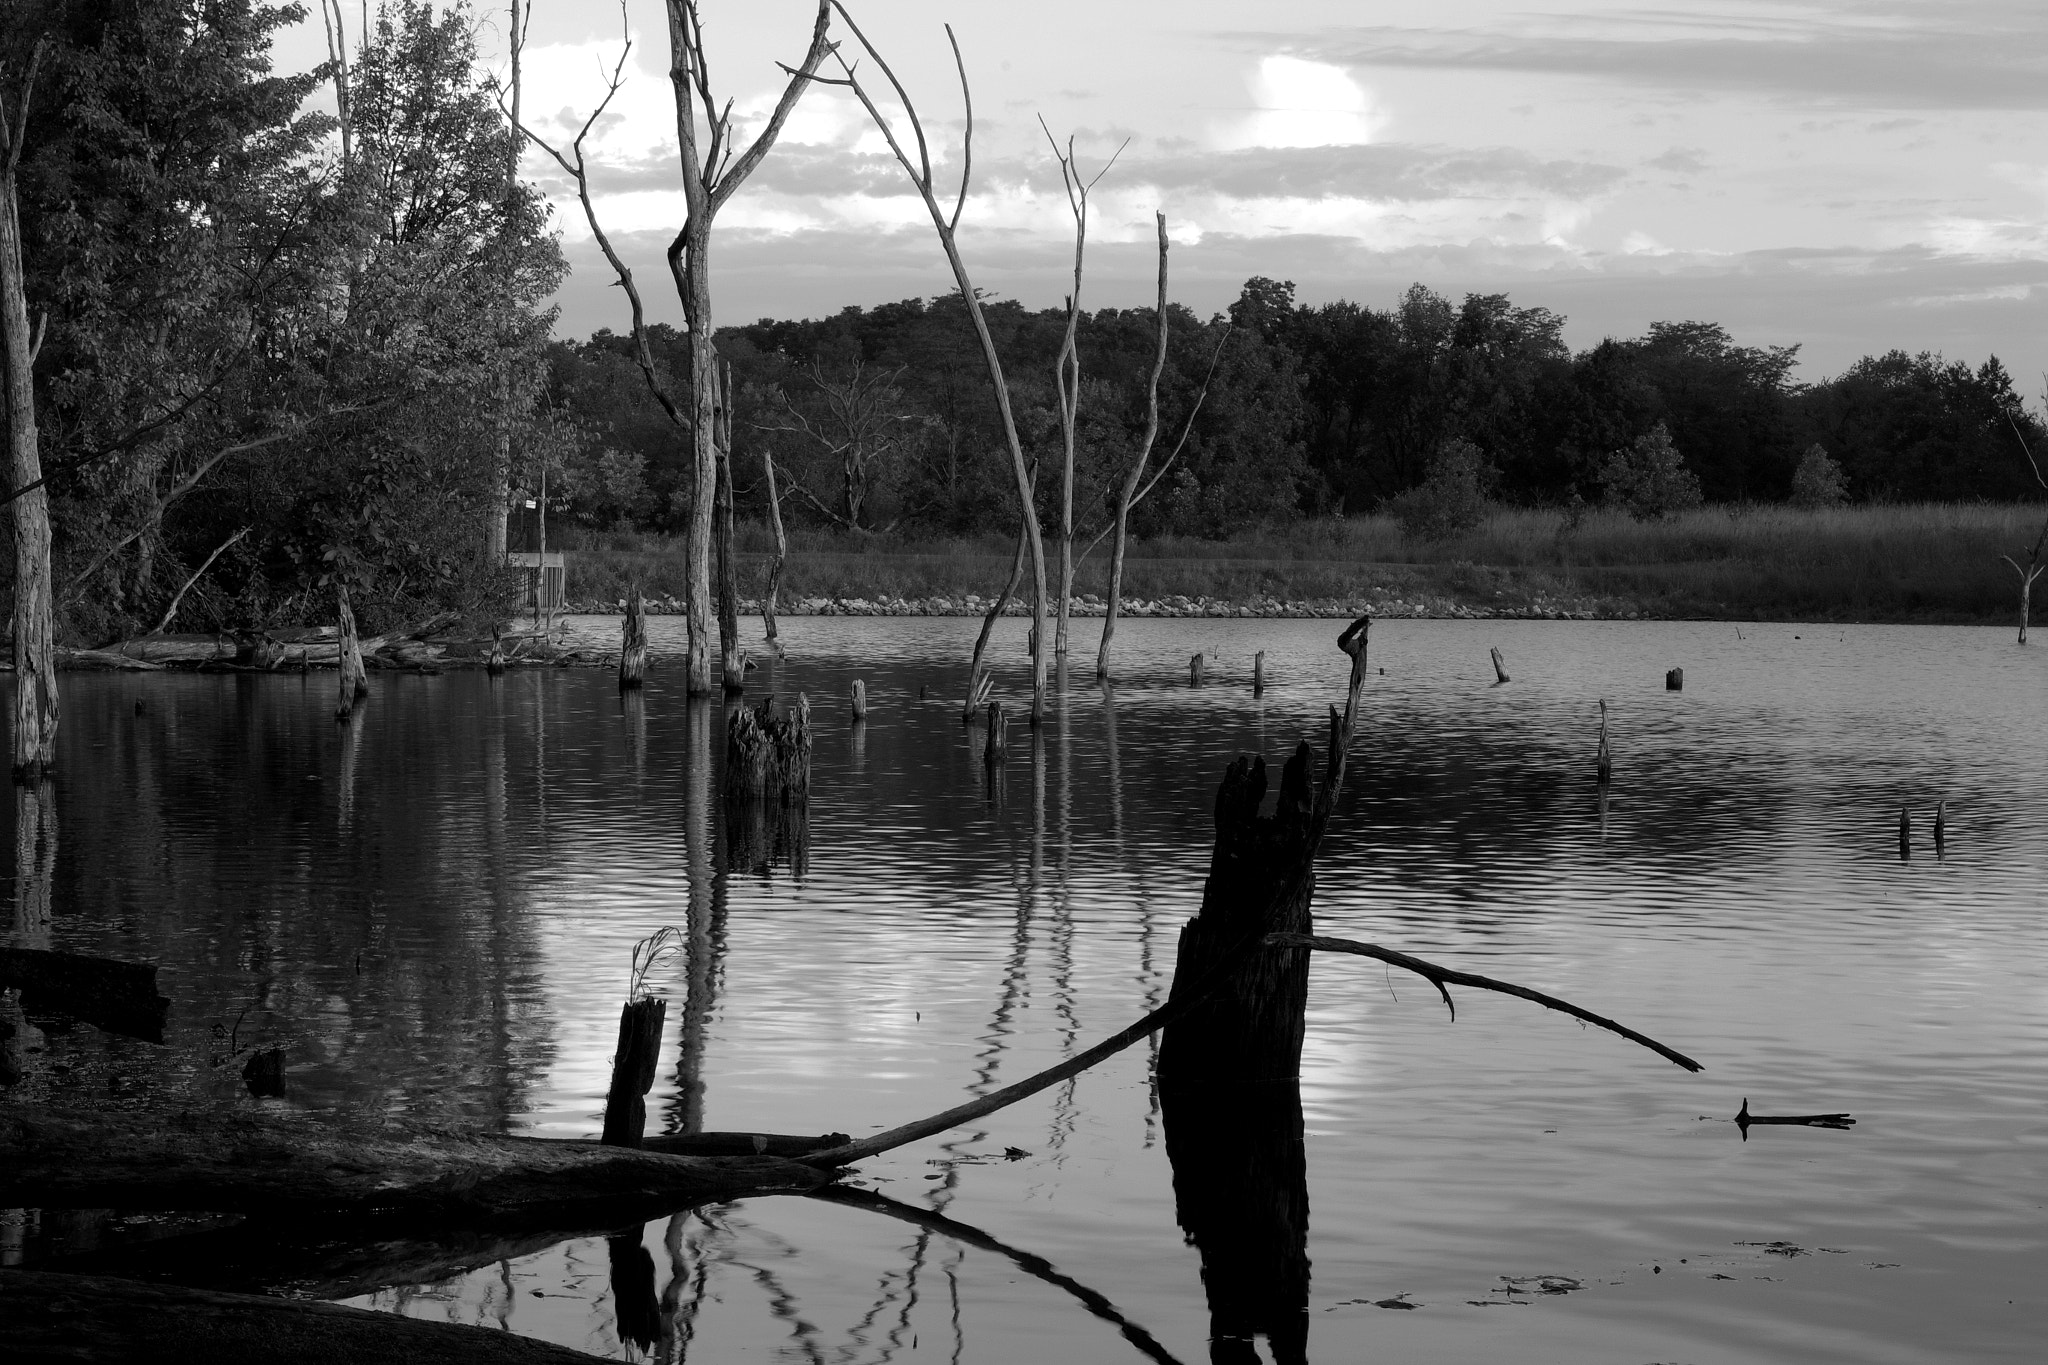 Pentax K-S2 sample photo. Lake morning photography